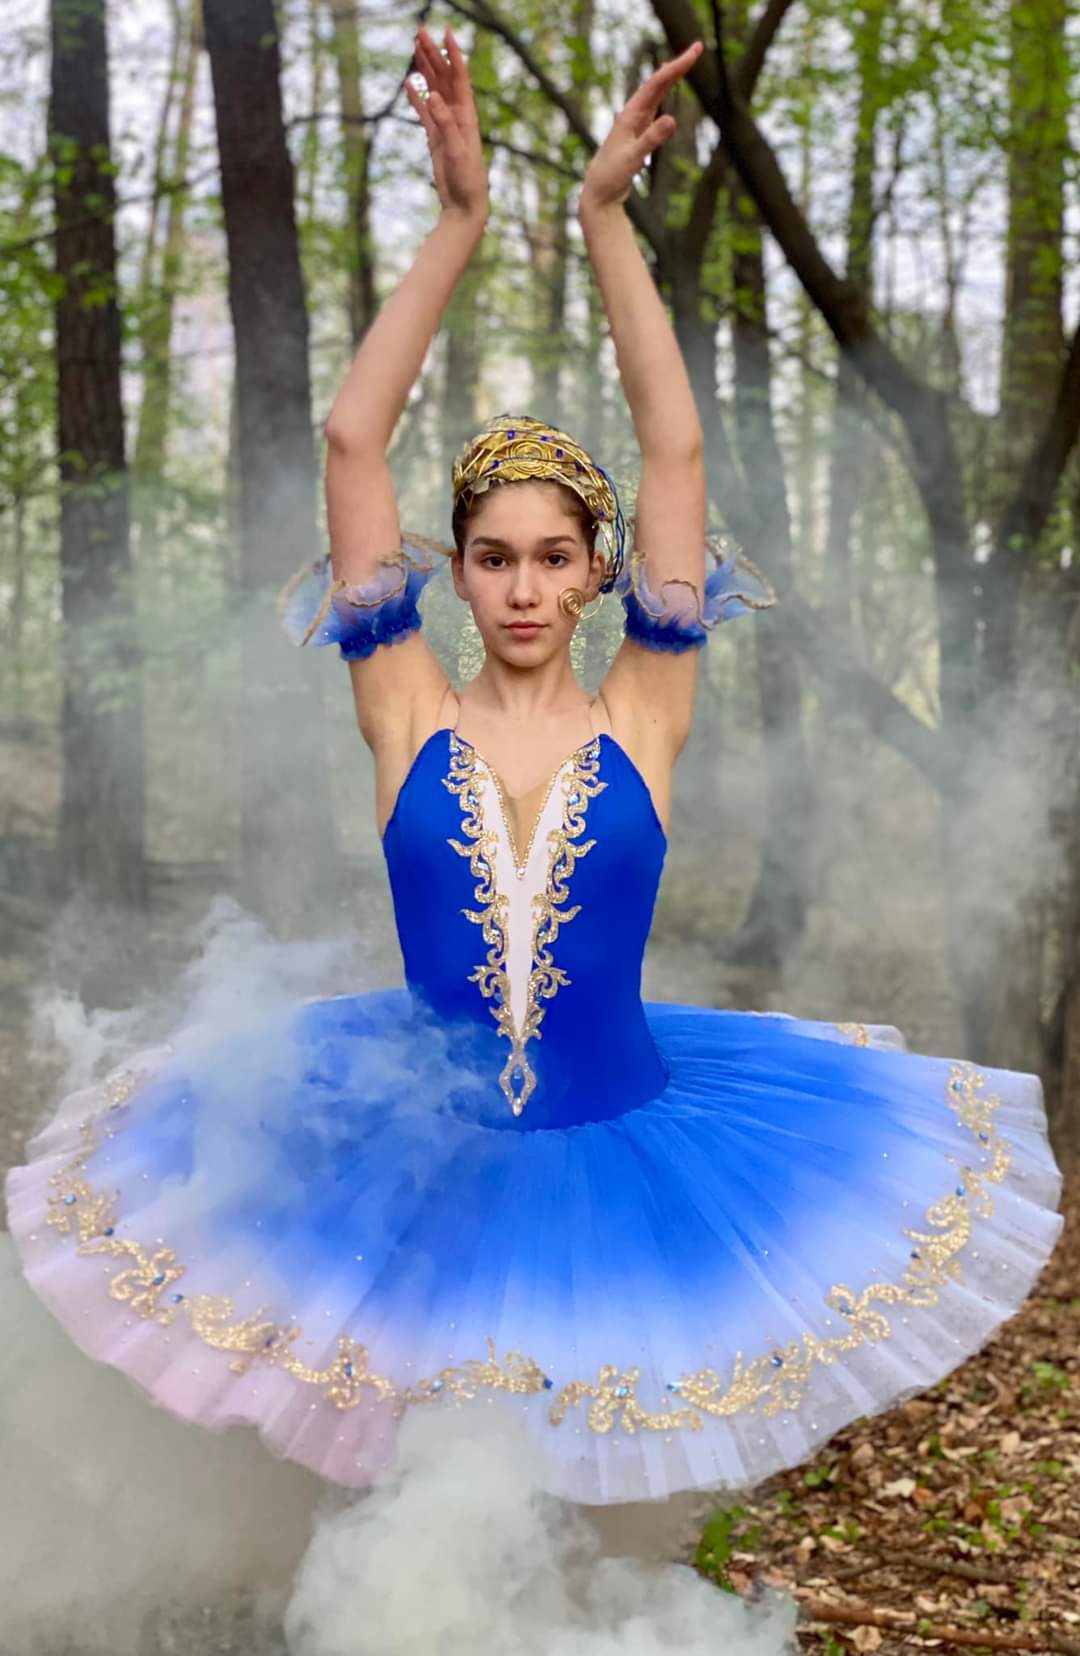 tutu szycie paczka baletowa klasyczna stroje baletowe Bluebird Florina ballet costumes stage custom made rtw yagp